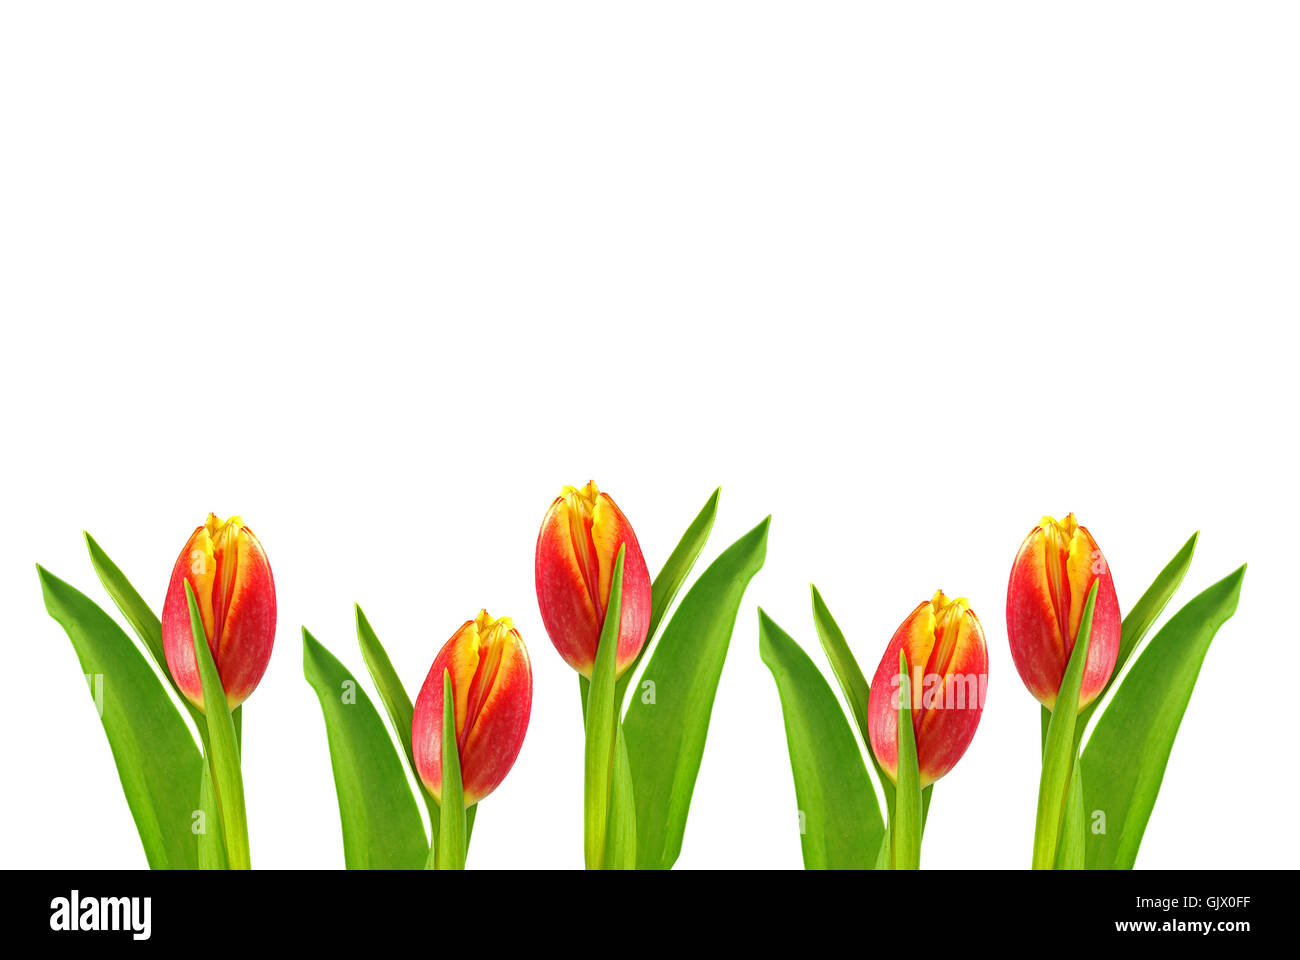 Toile de tulipes au printemps Banque D'Images